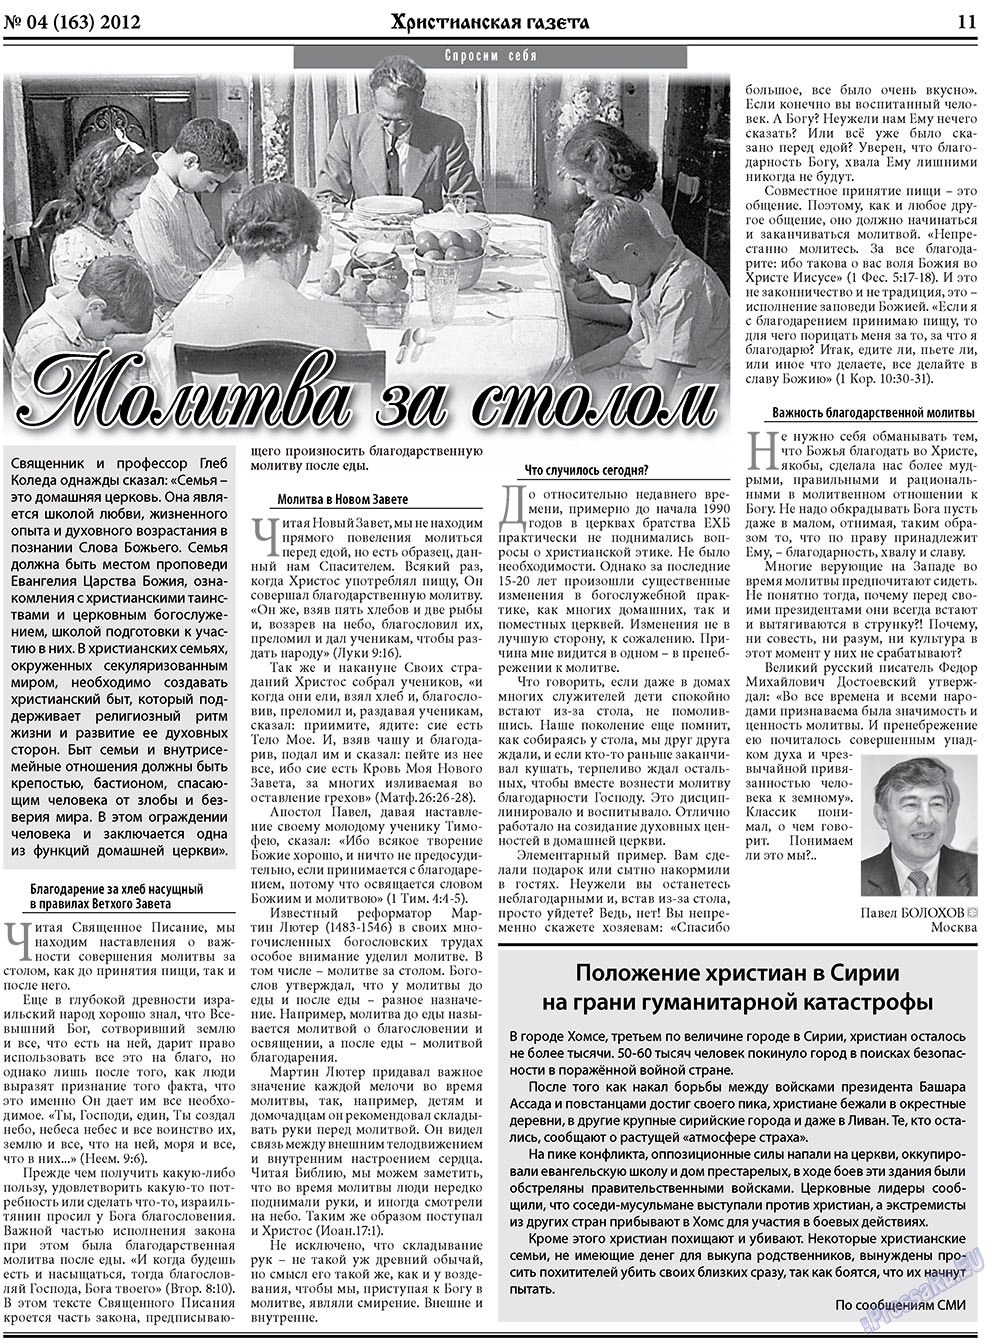 Христианская газета, газета. 2012 №4 стр.11